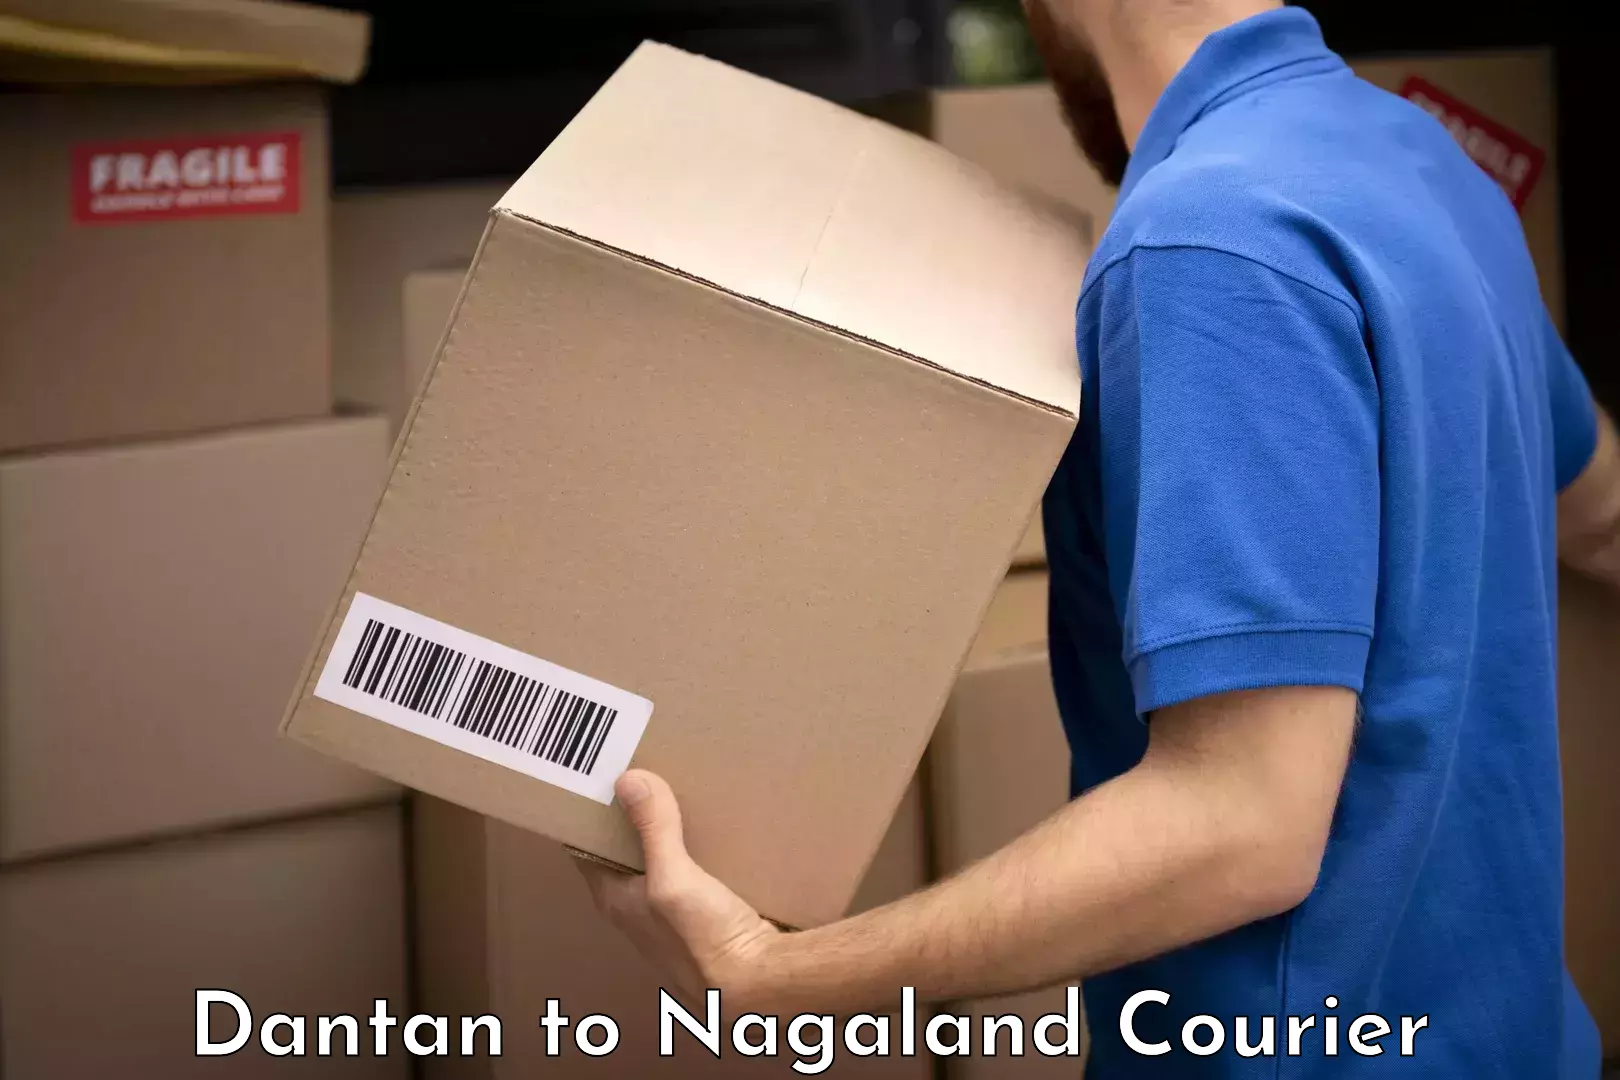 Luggage forwarding service Dantan to NIT Nagaland